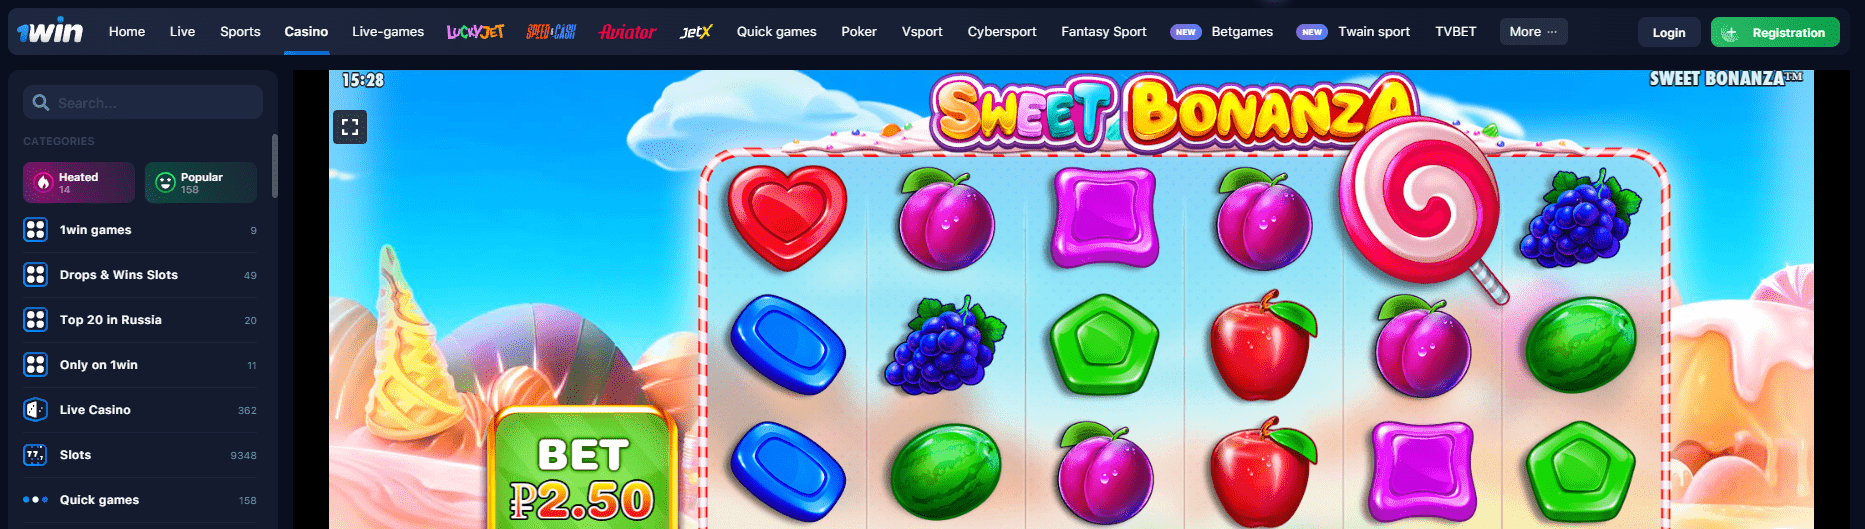 Sweet Bonanza en línea para jugar 1win